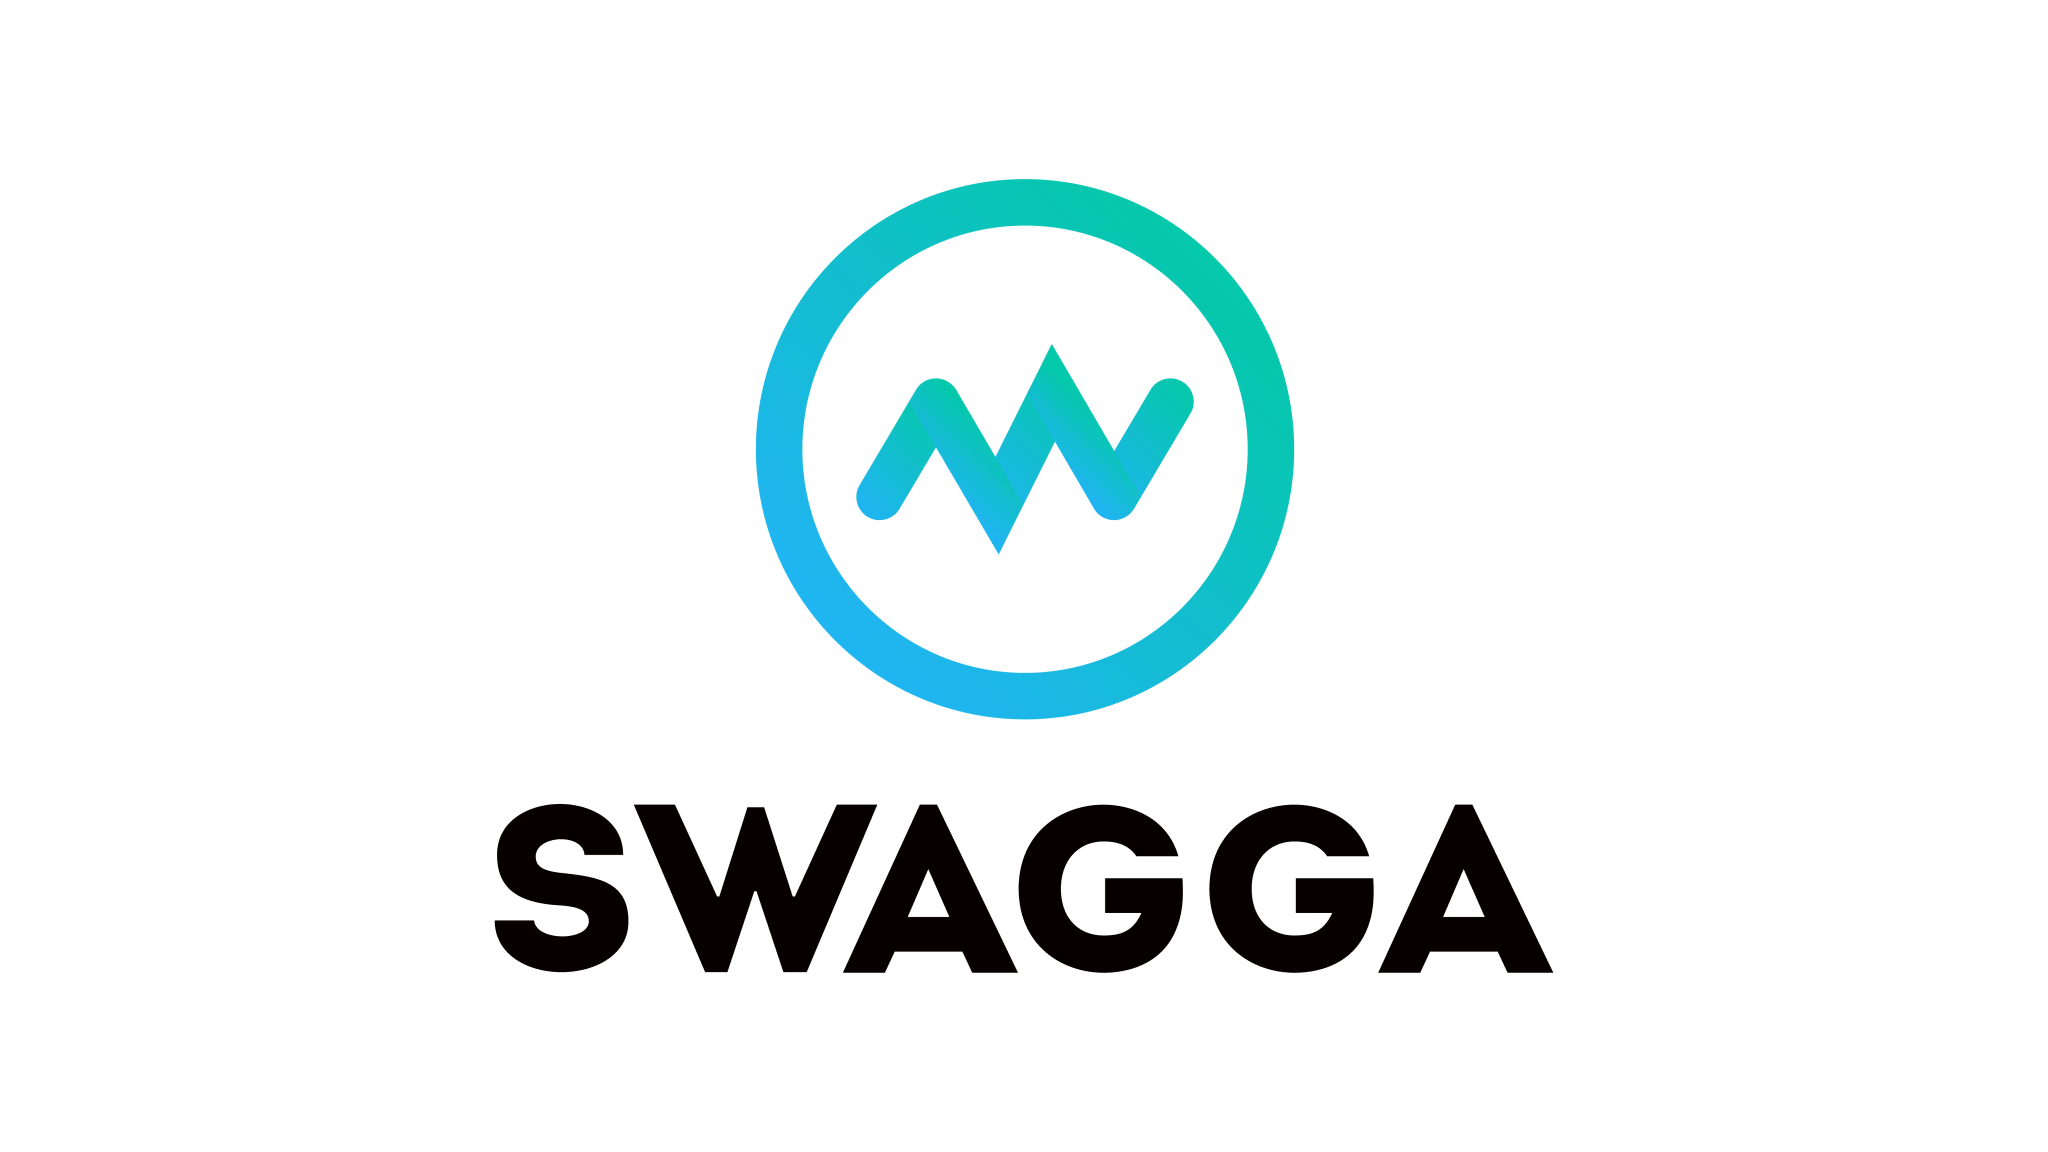 Swagga logo